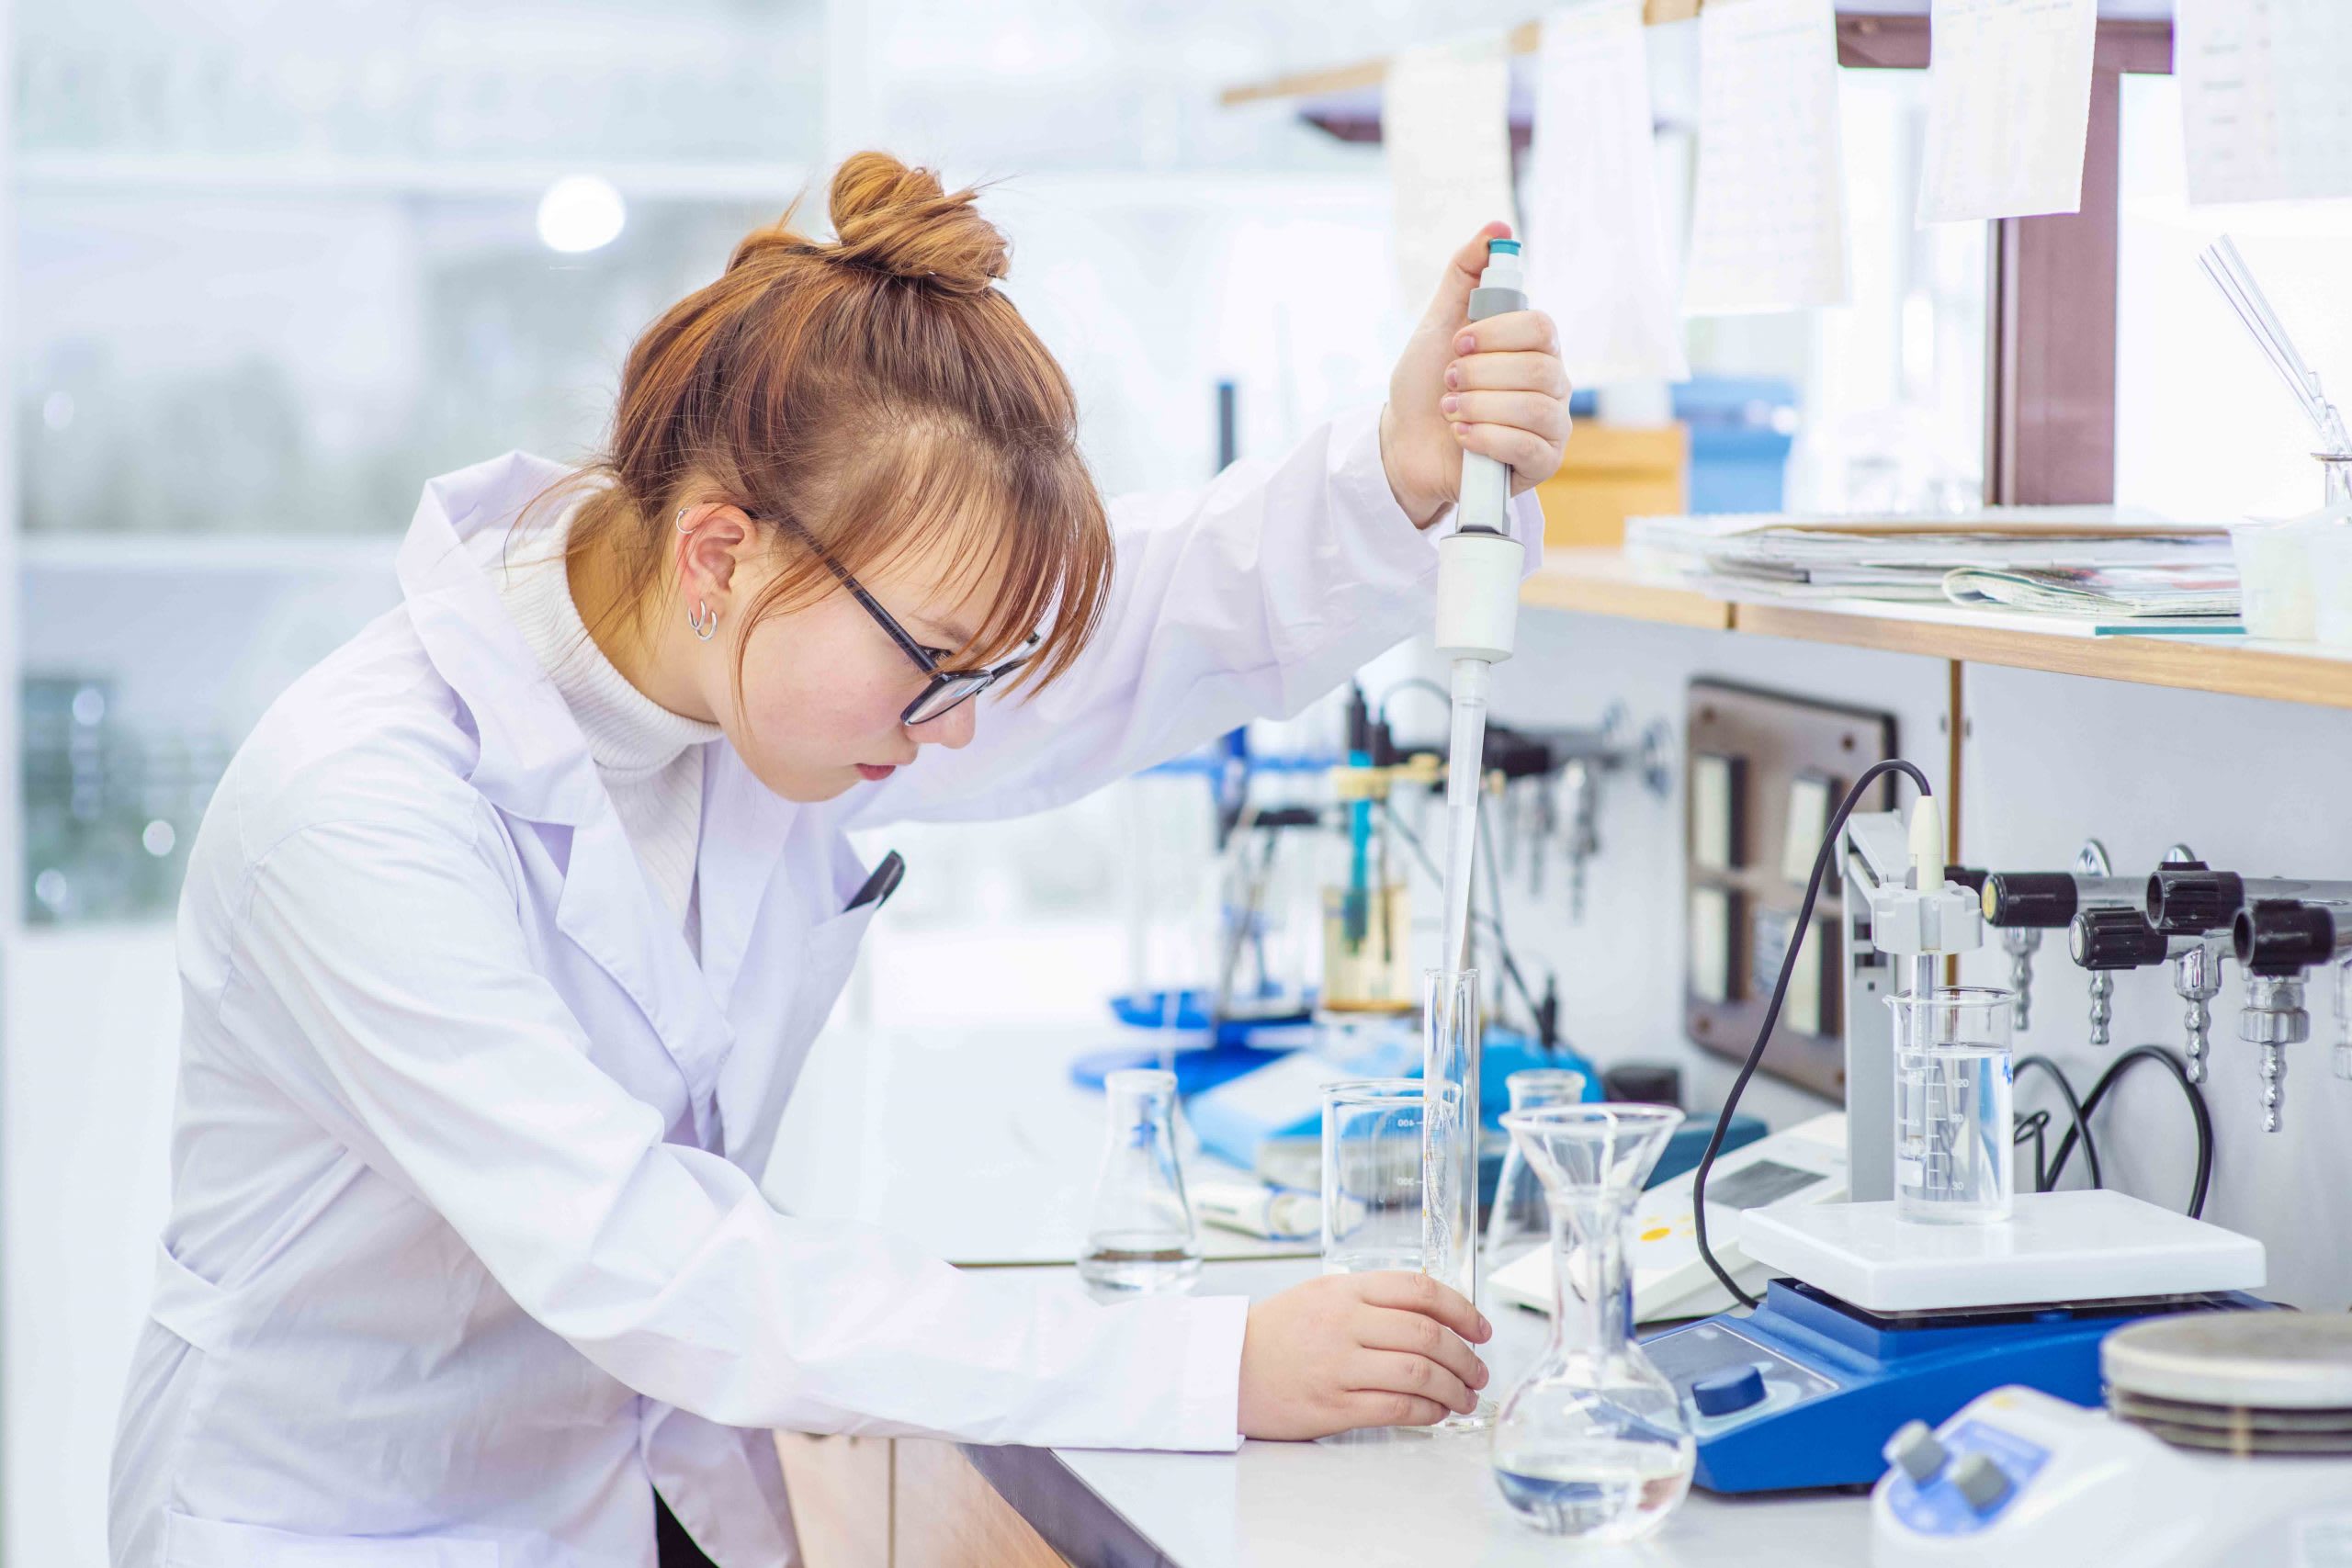 Качественное образование в области химии в Чехии можно получить в Карловом университете, Высшей школе химической технологии, Техническом университете в Остраве и университете Пардубице.